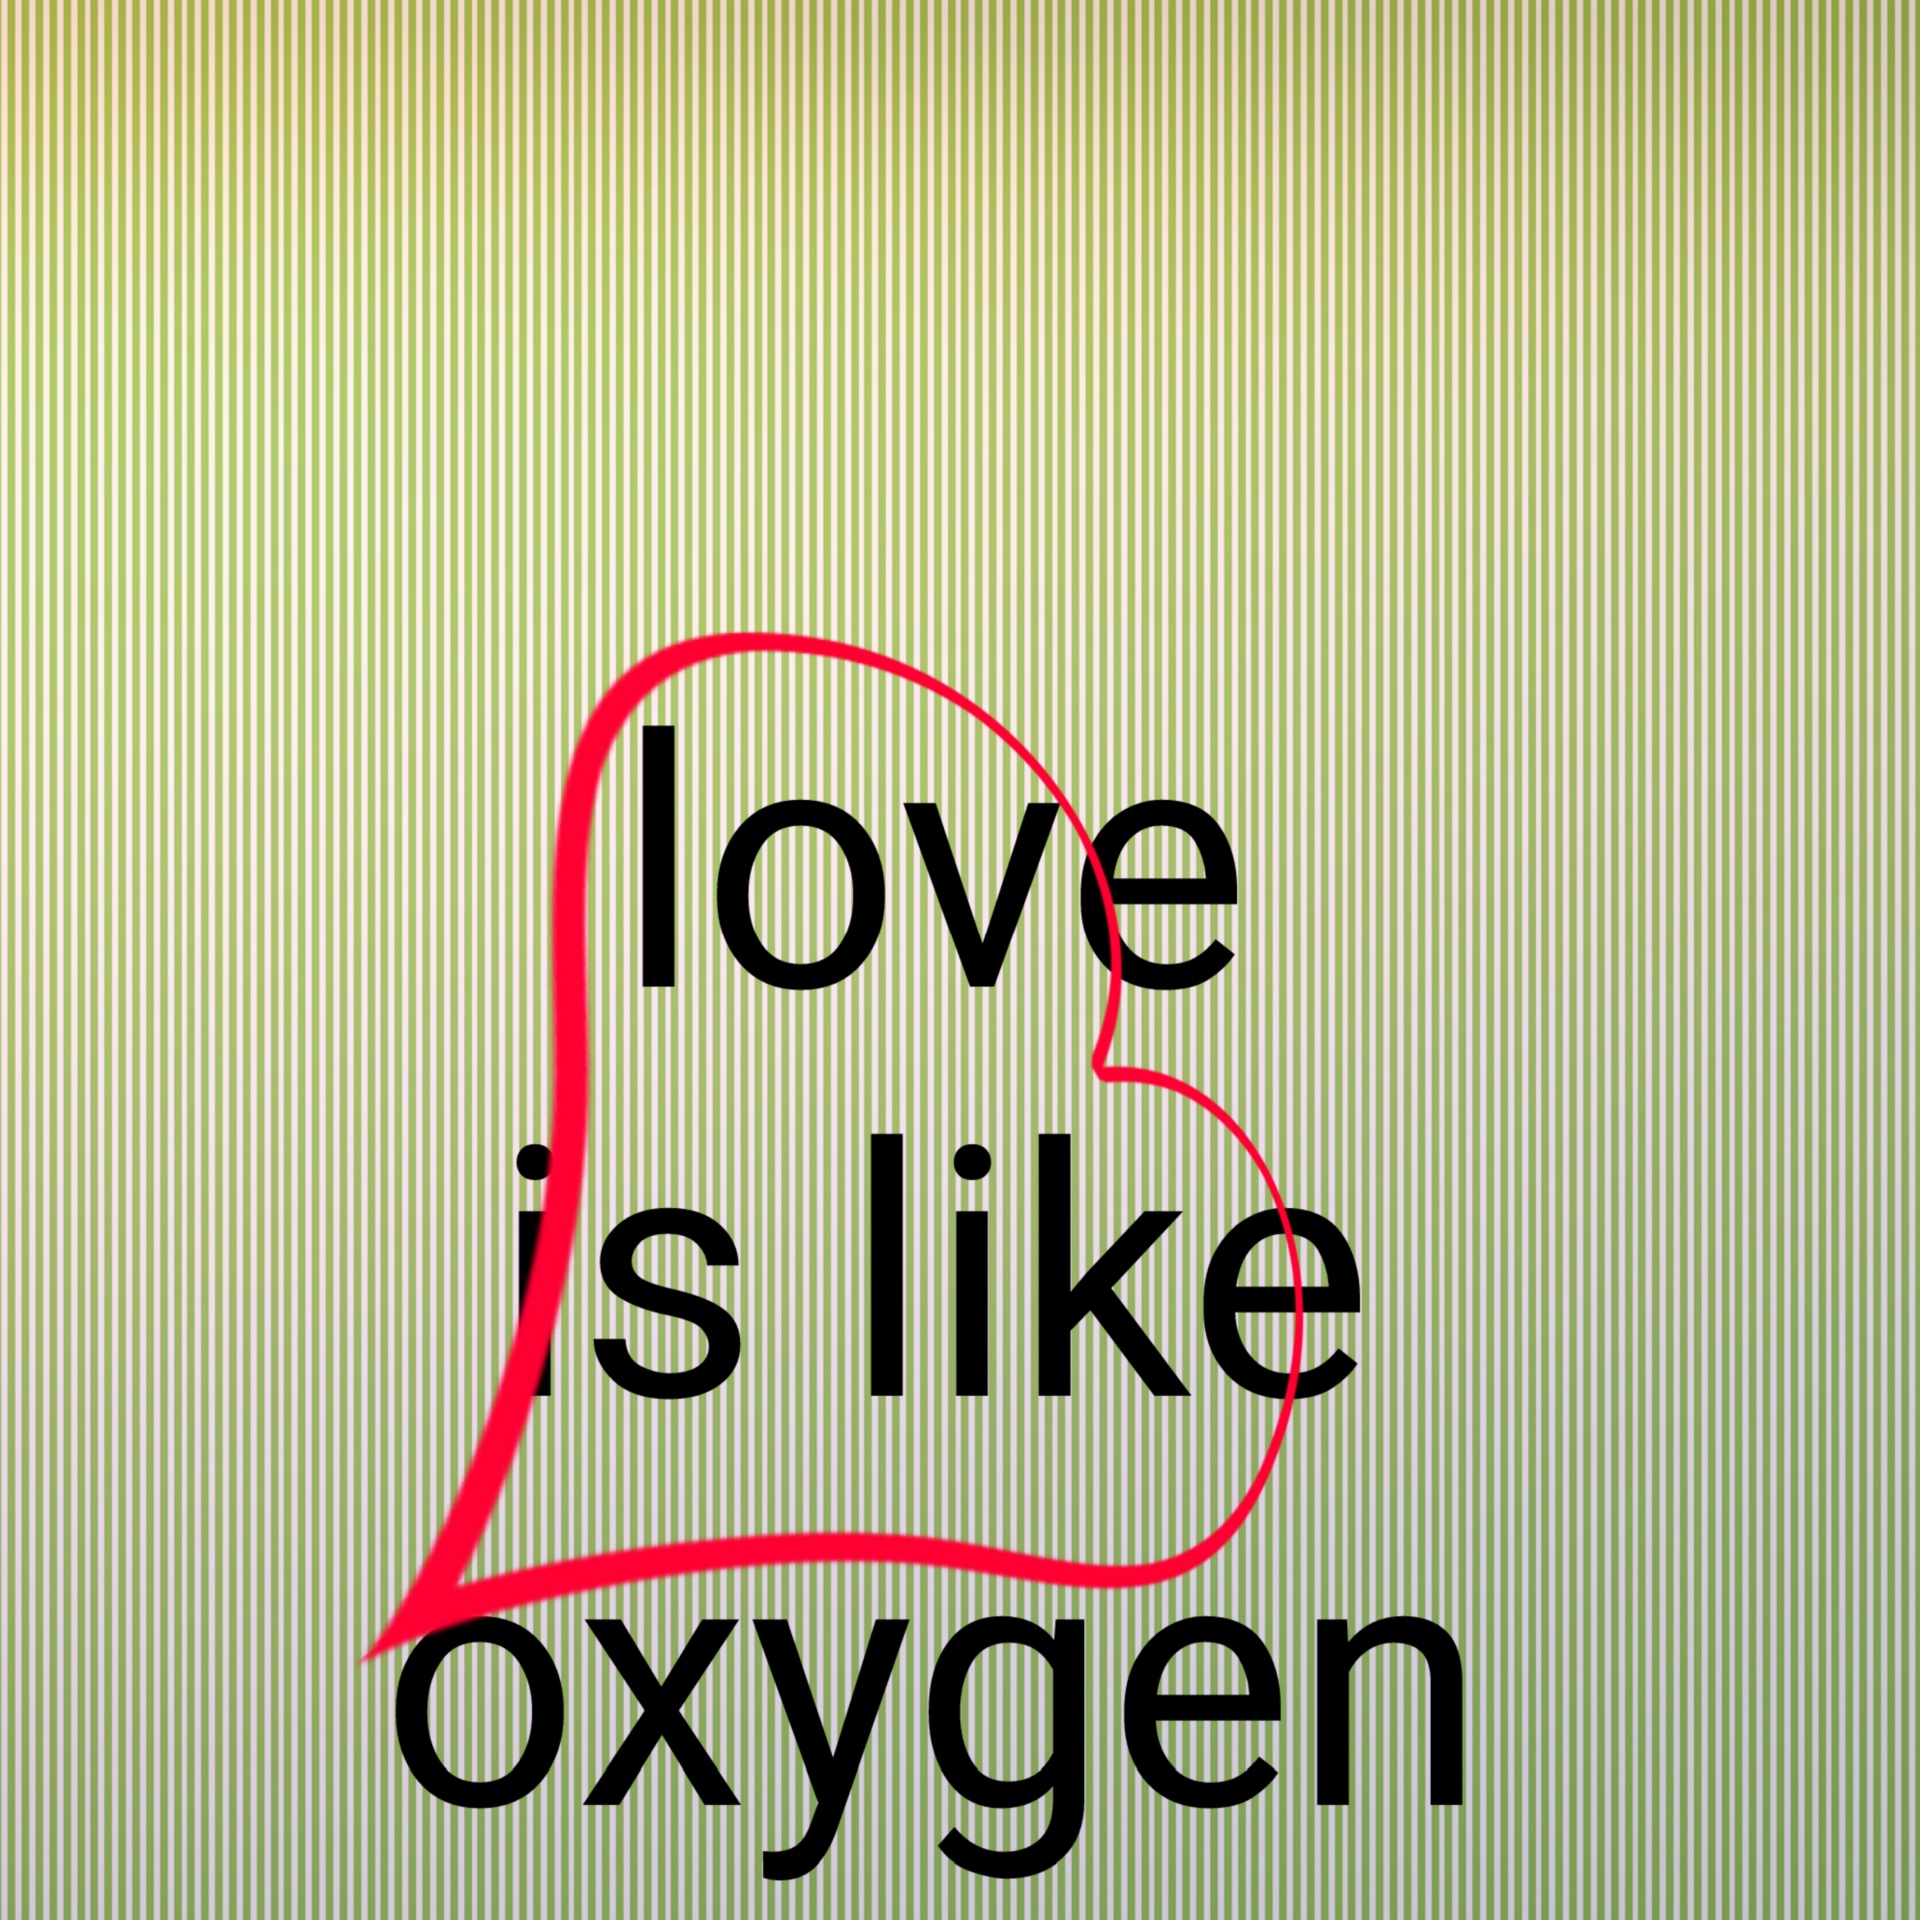 Liefde is als zuurstof